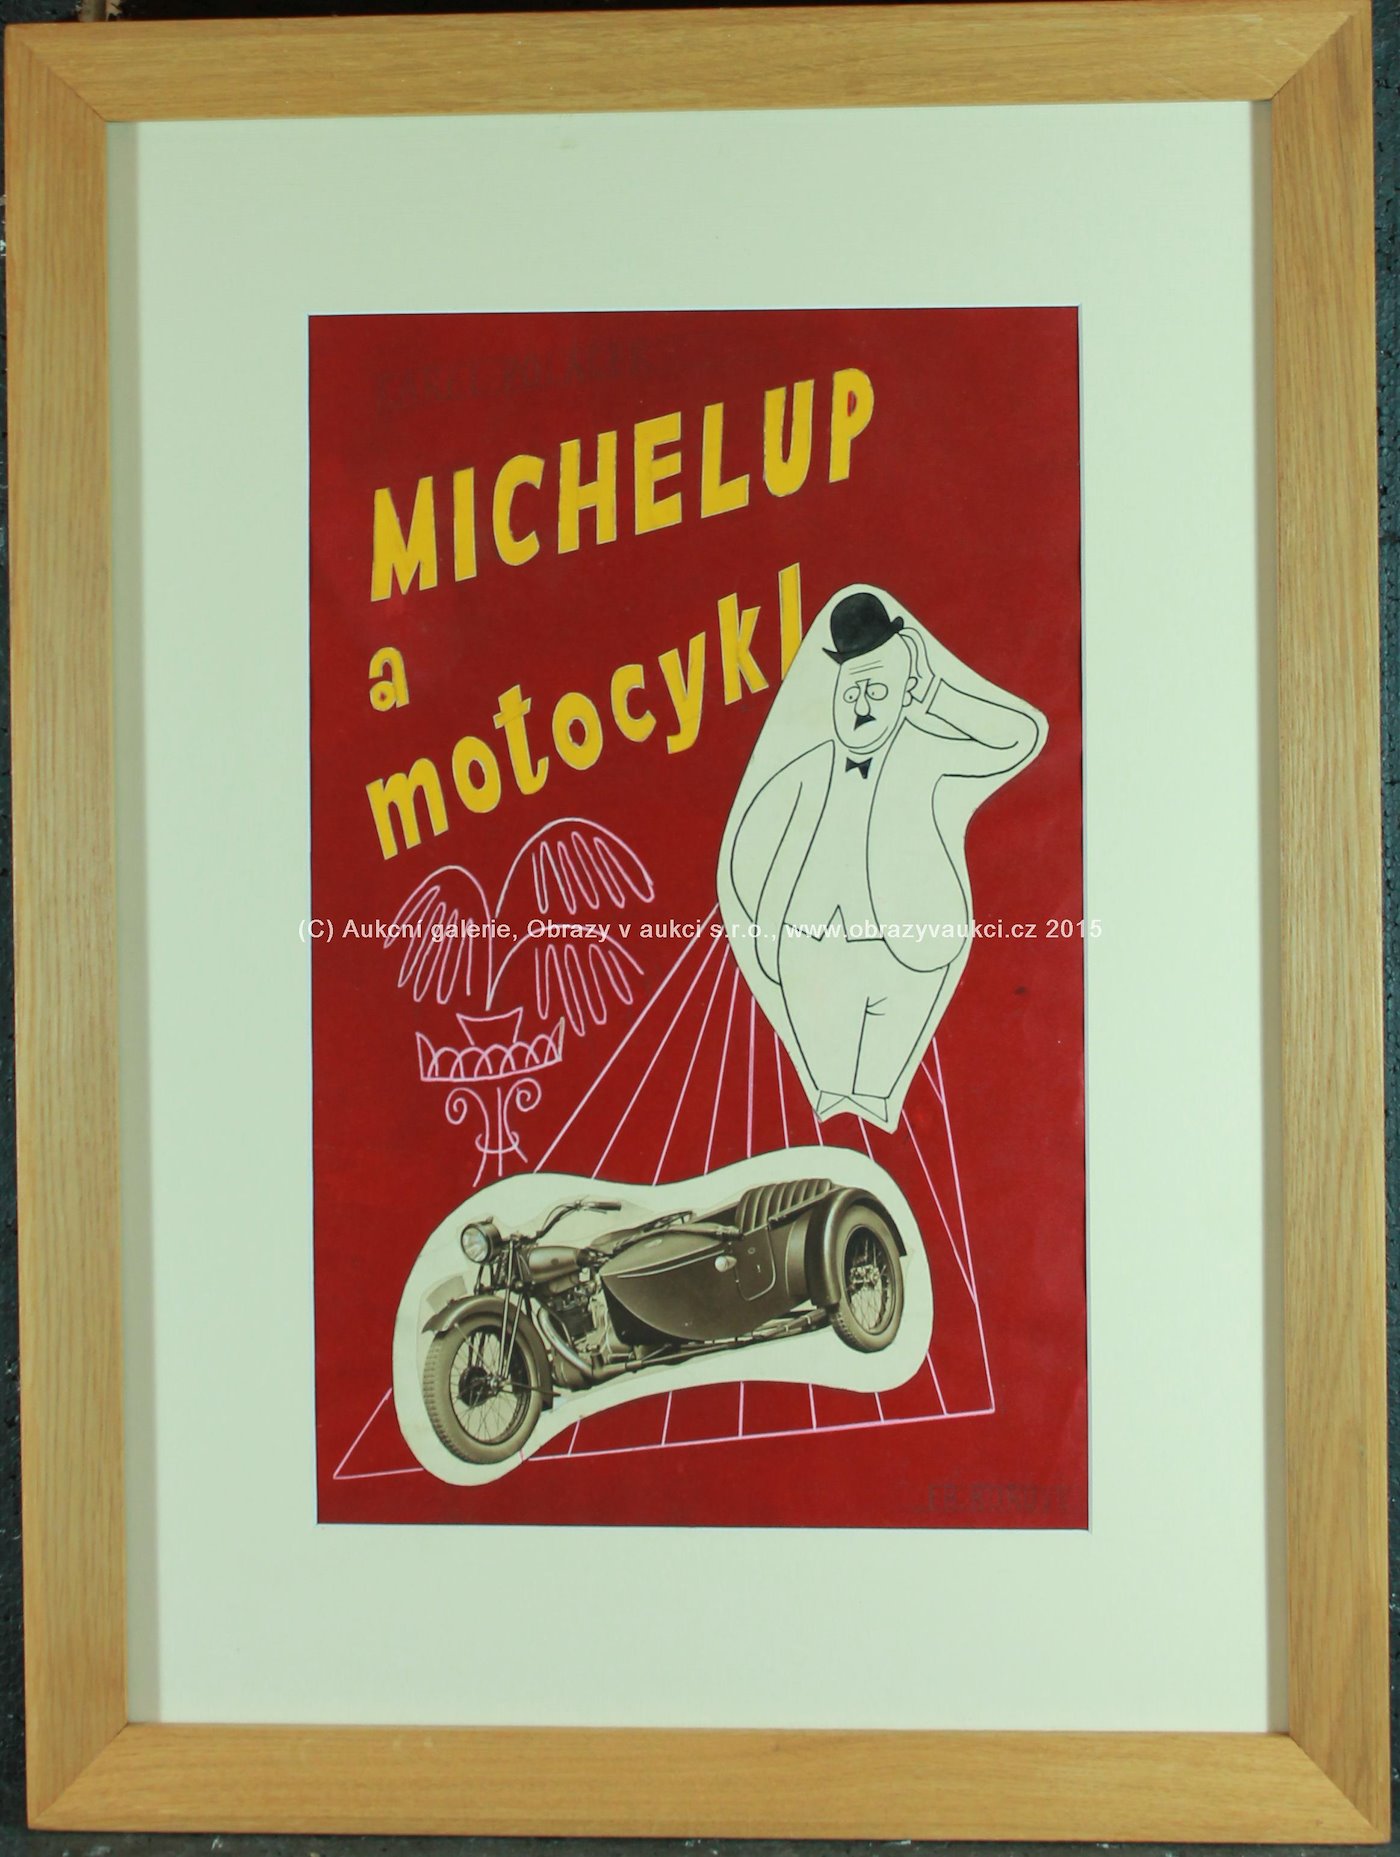 Antonín Pelc - Michelup a motocykl - návrh obálky